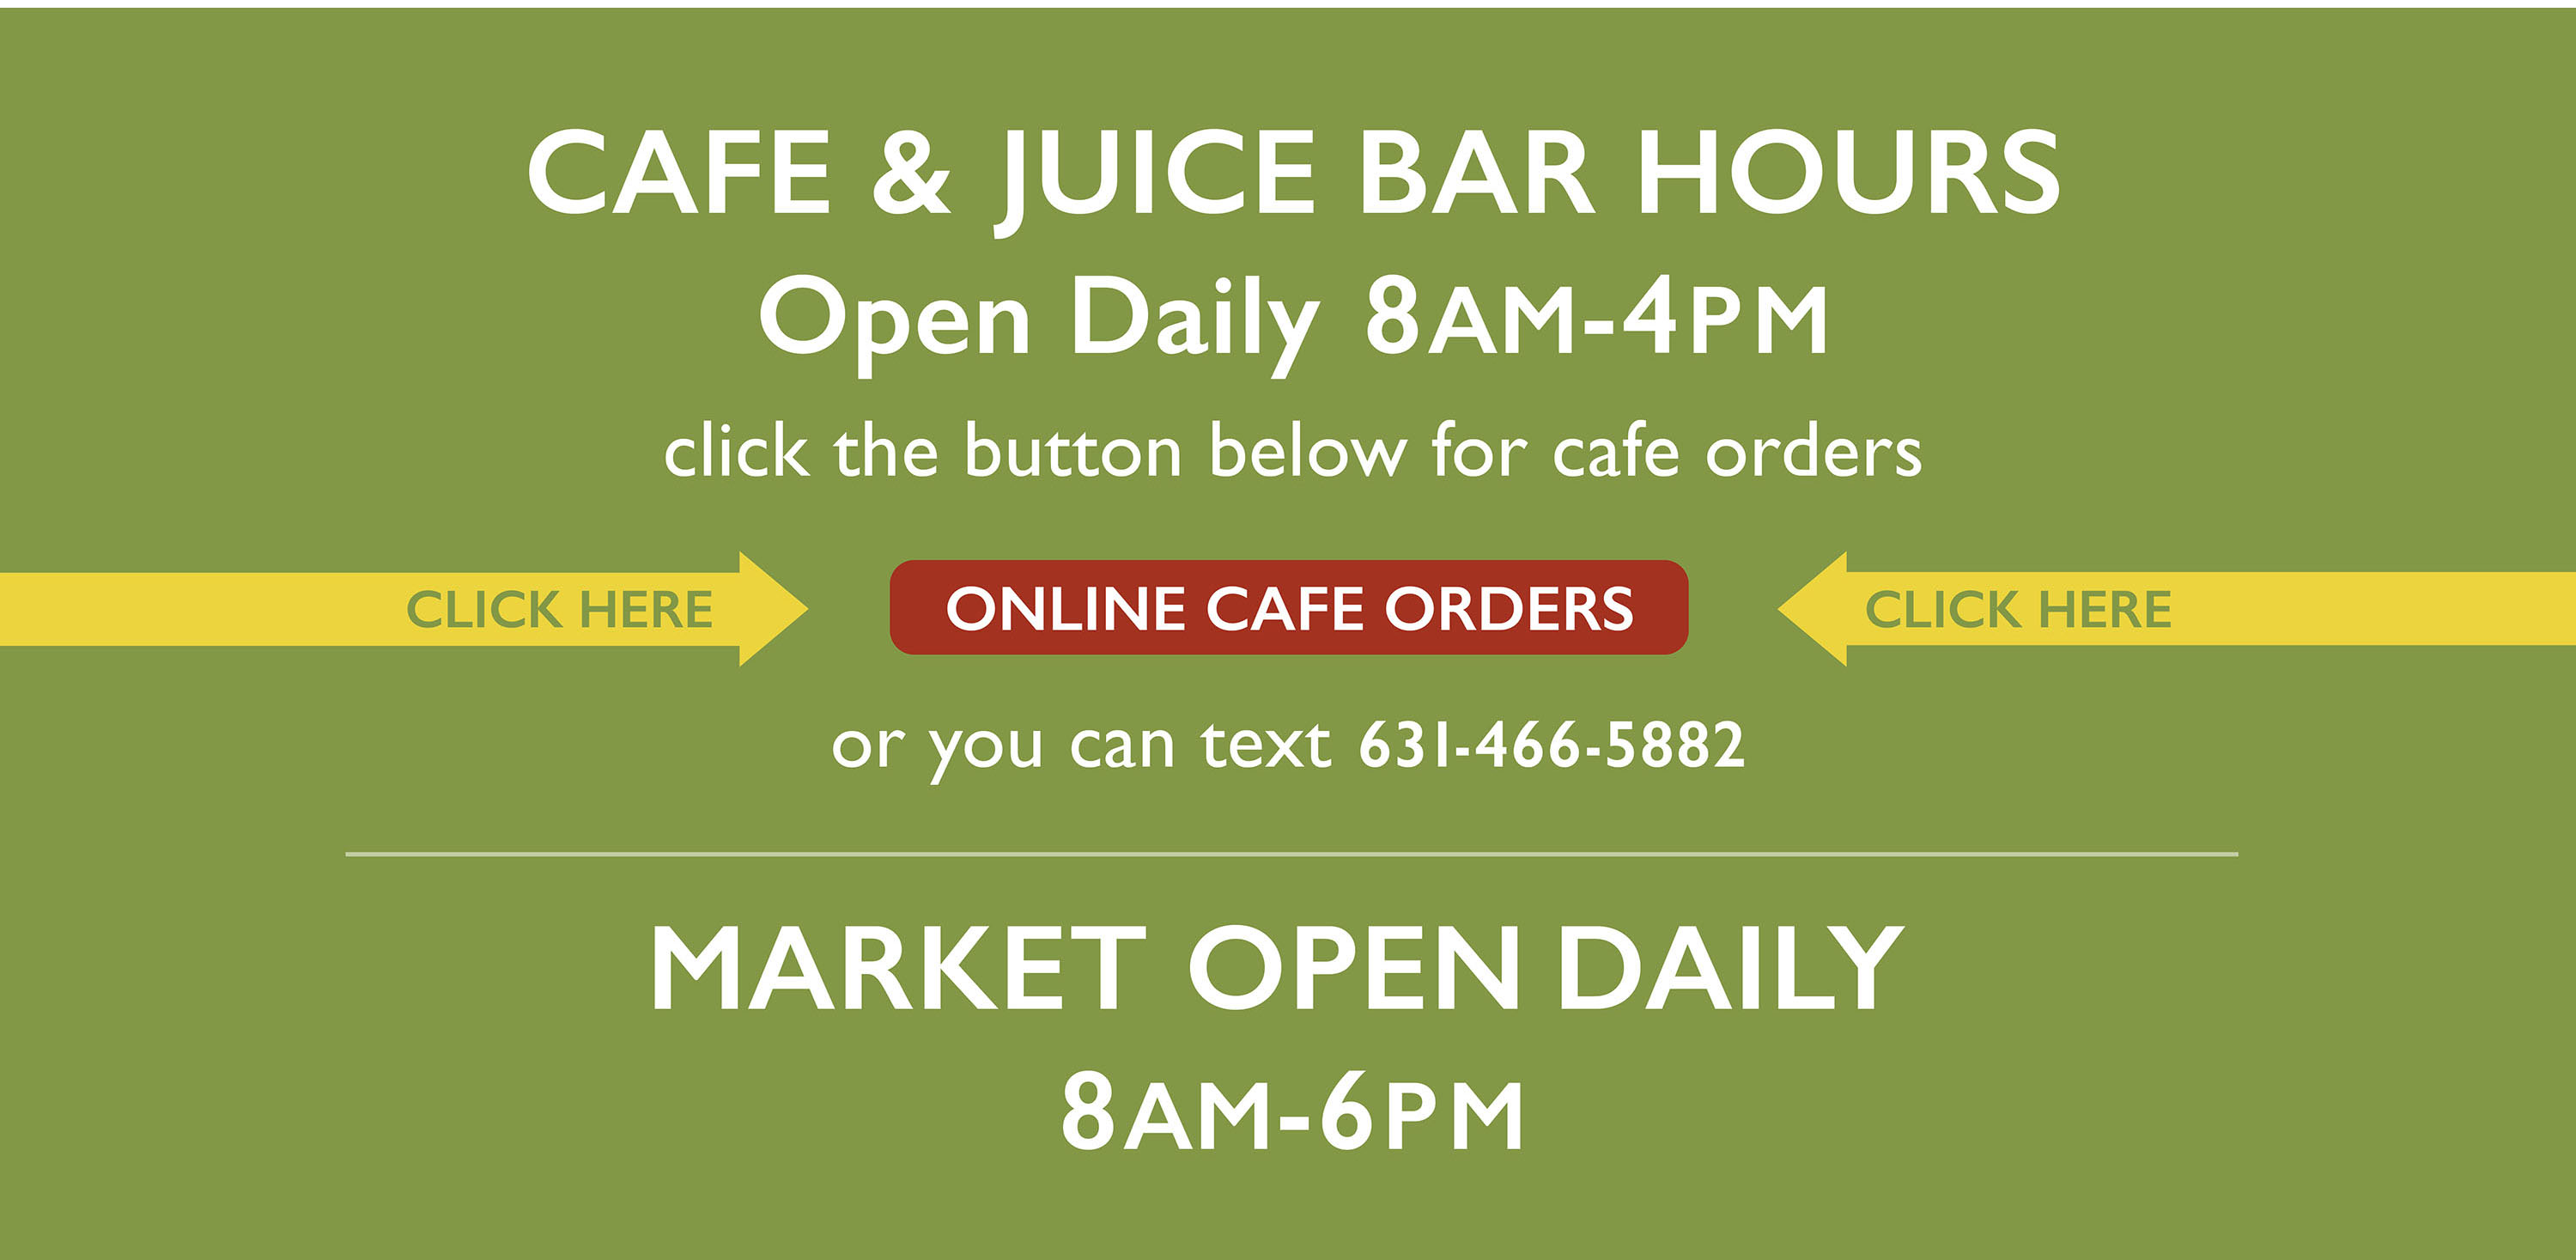 Cafe & Juice Bar - Order Online